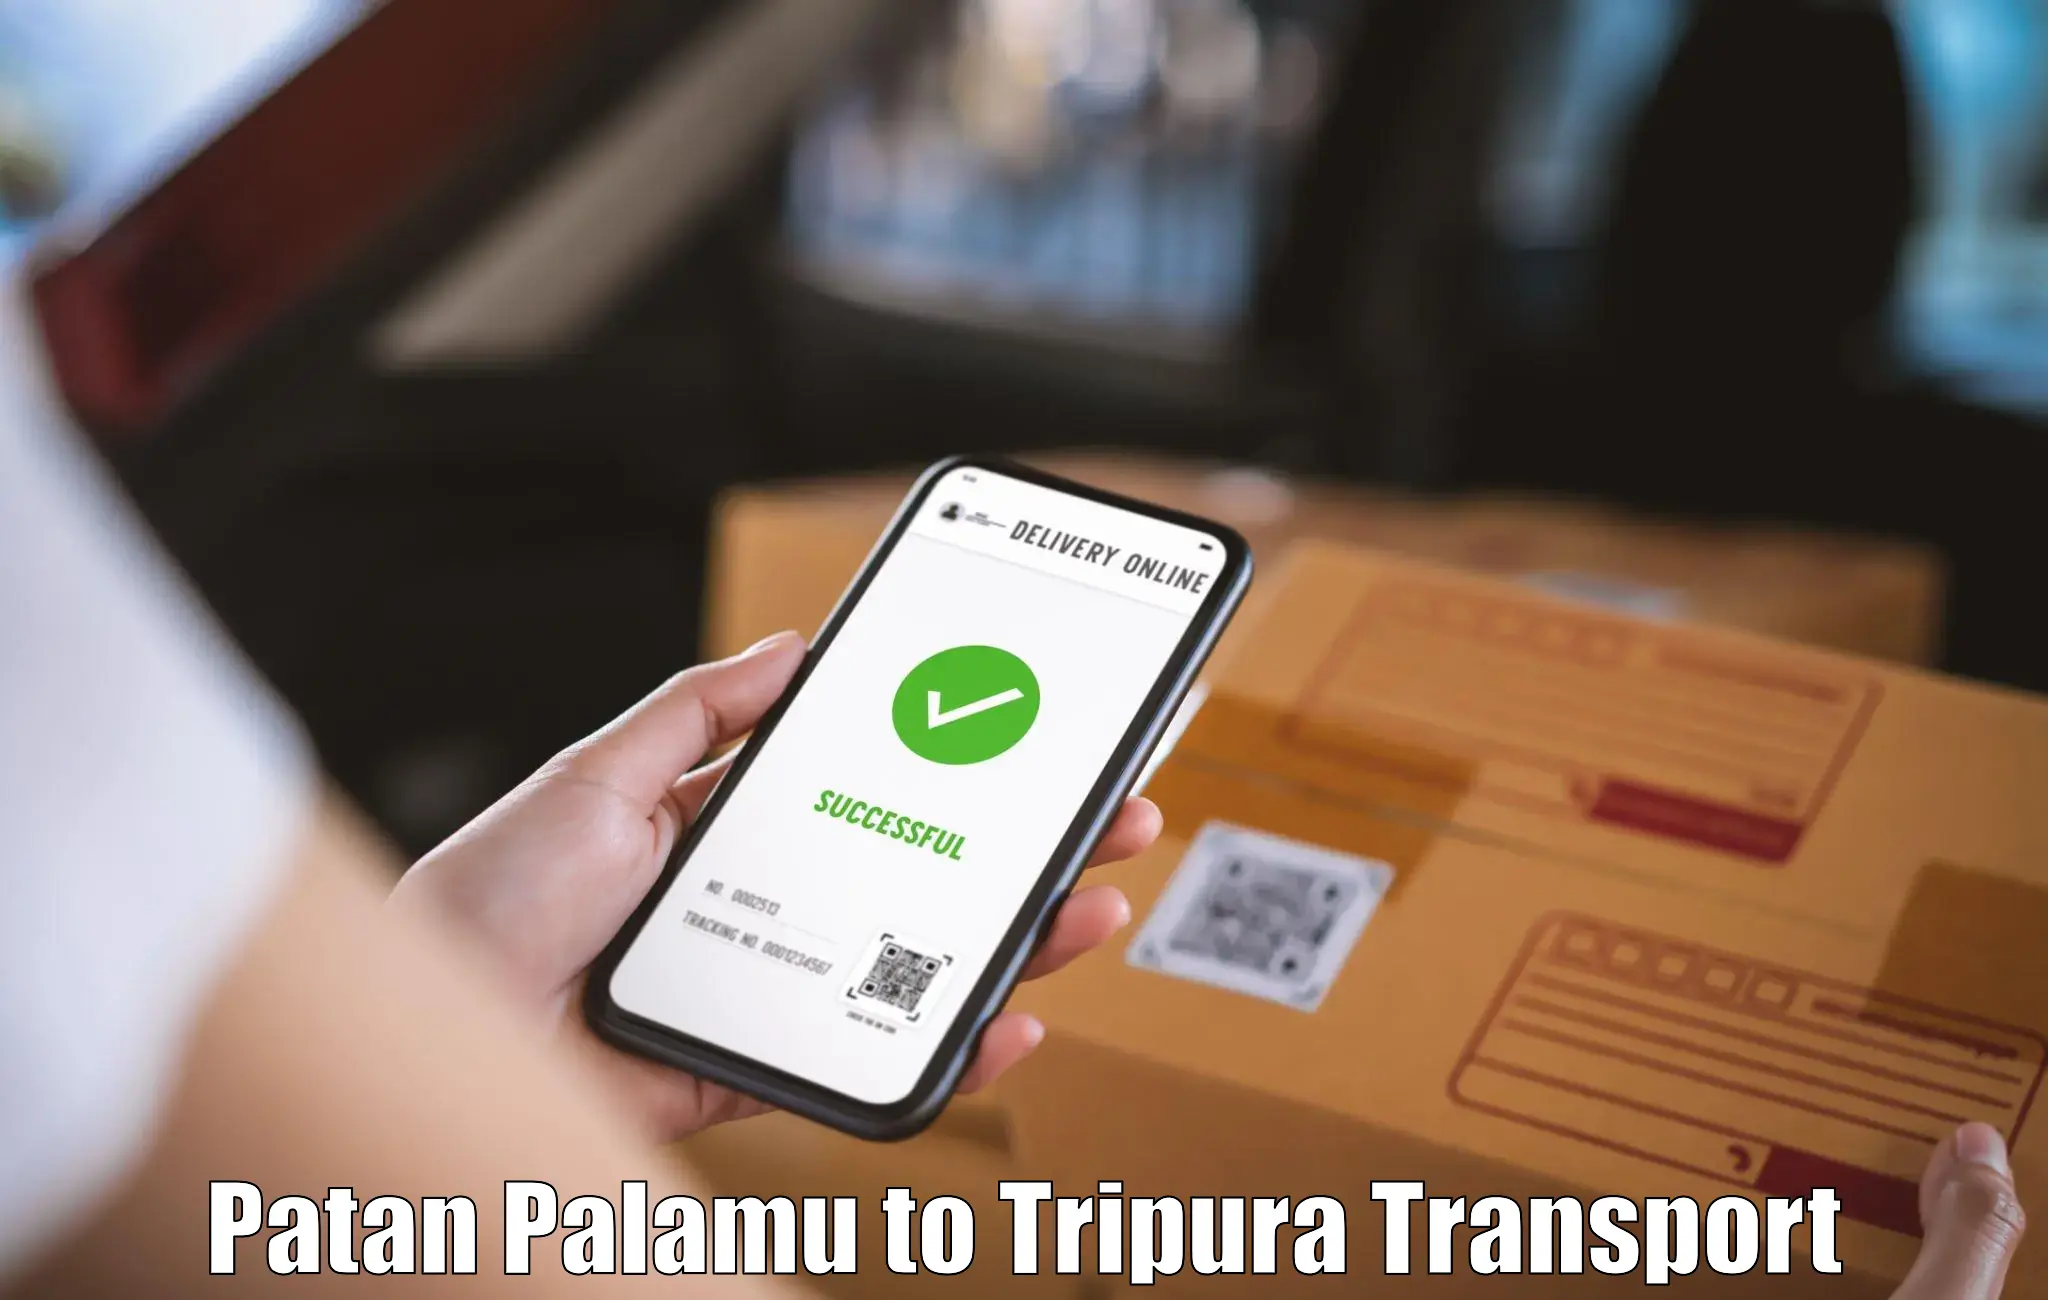 Container transport service Patan Palamu to Sonamura